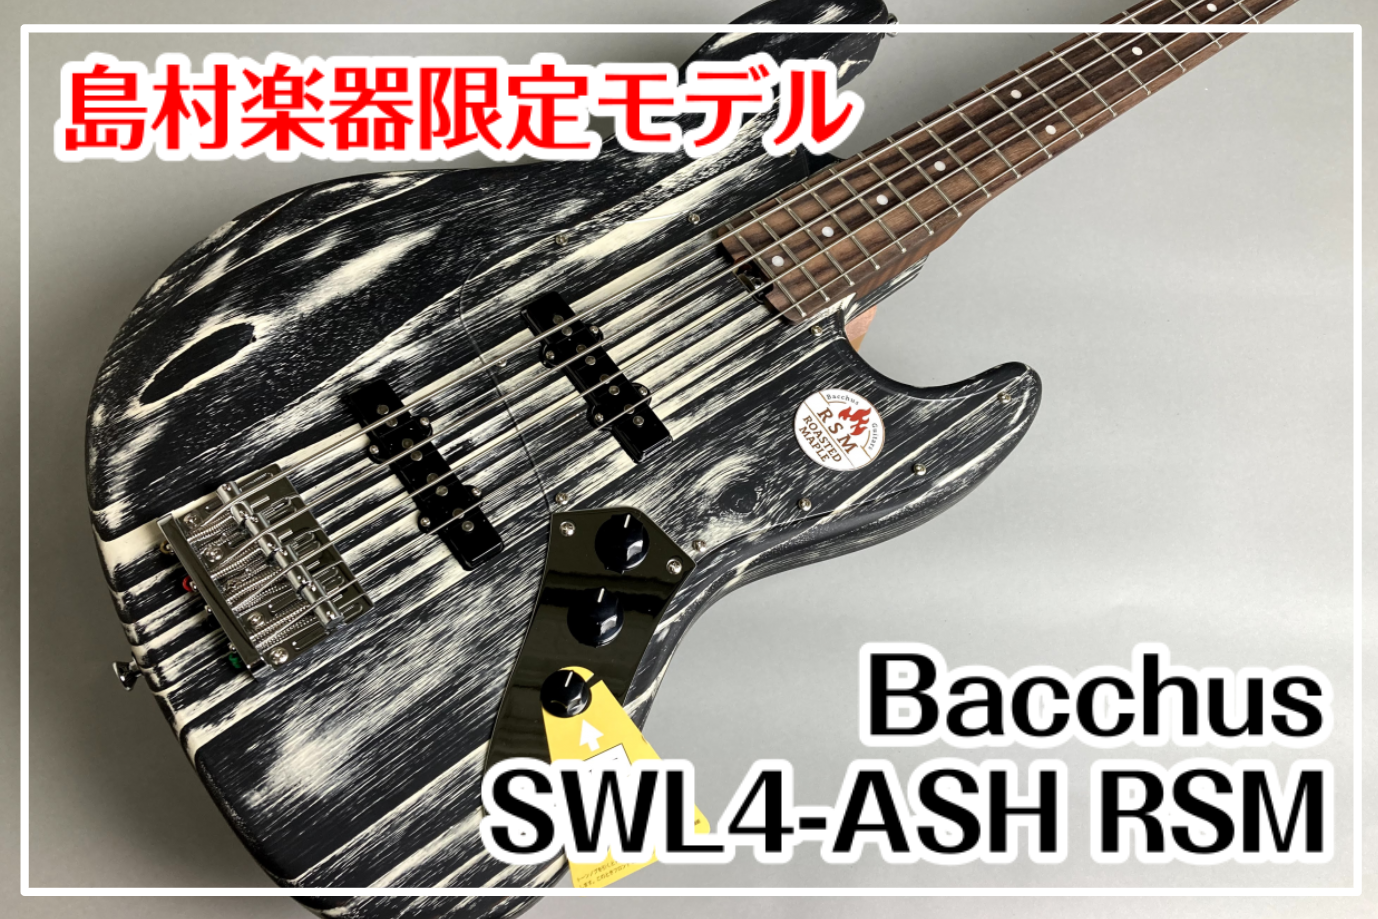 【島村楽器コラボレーションモデル】Bacchus SWL4-ASH RSM 入荷！